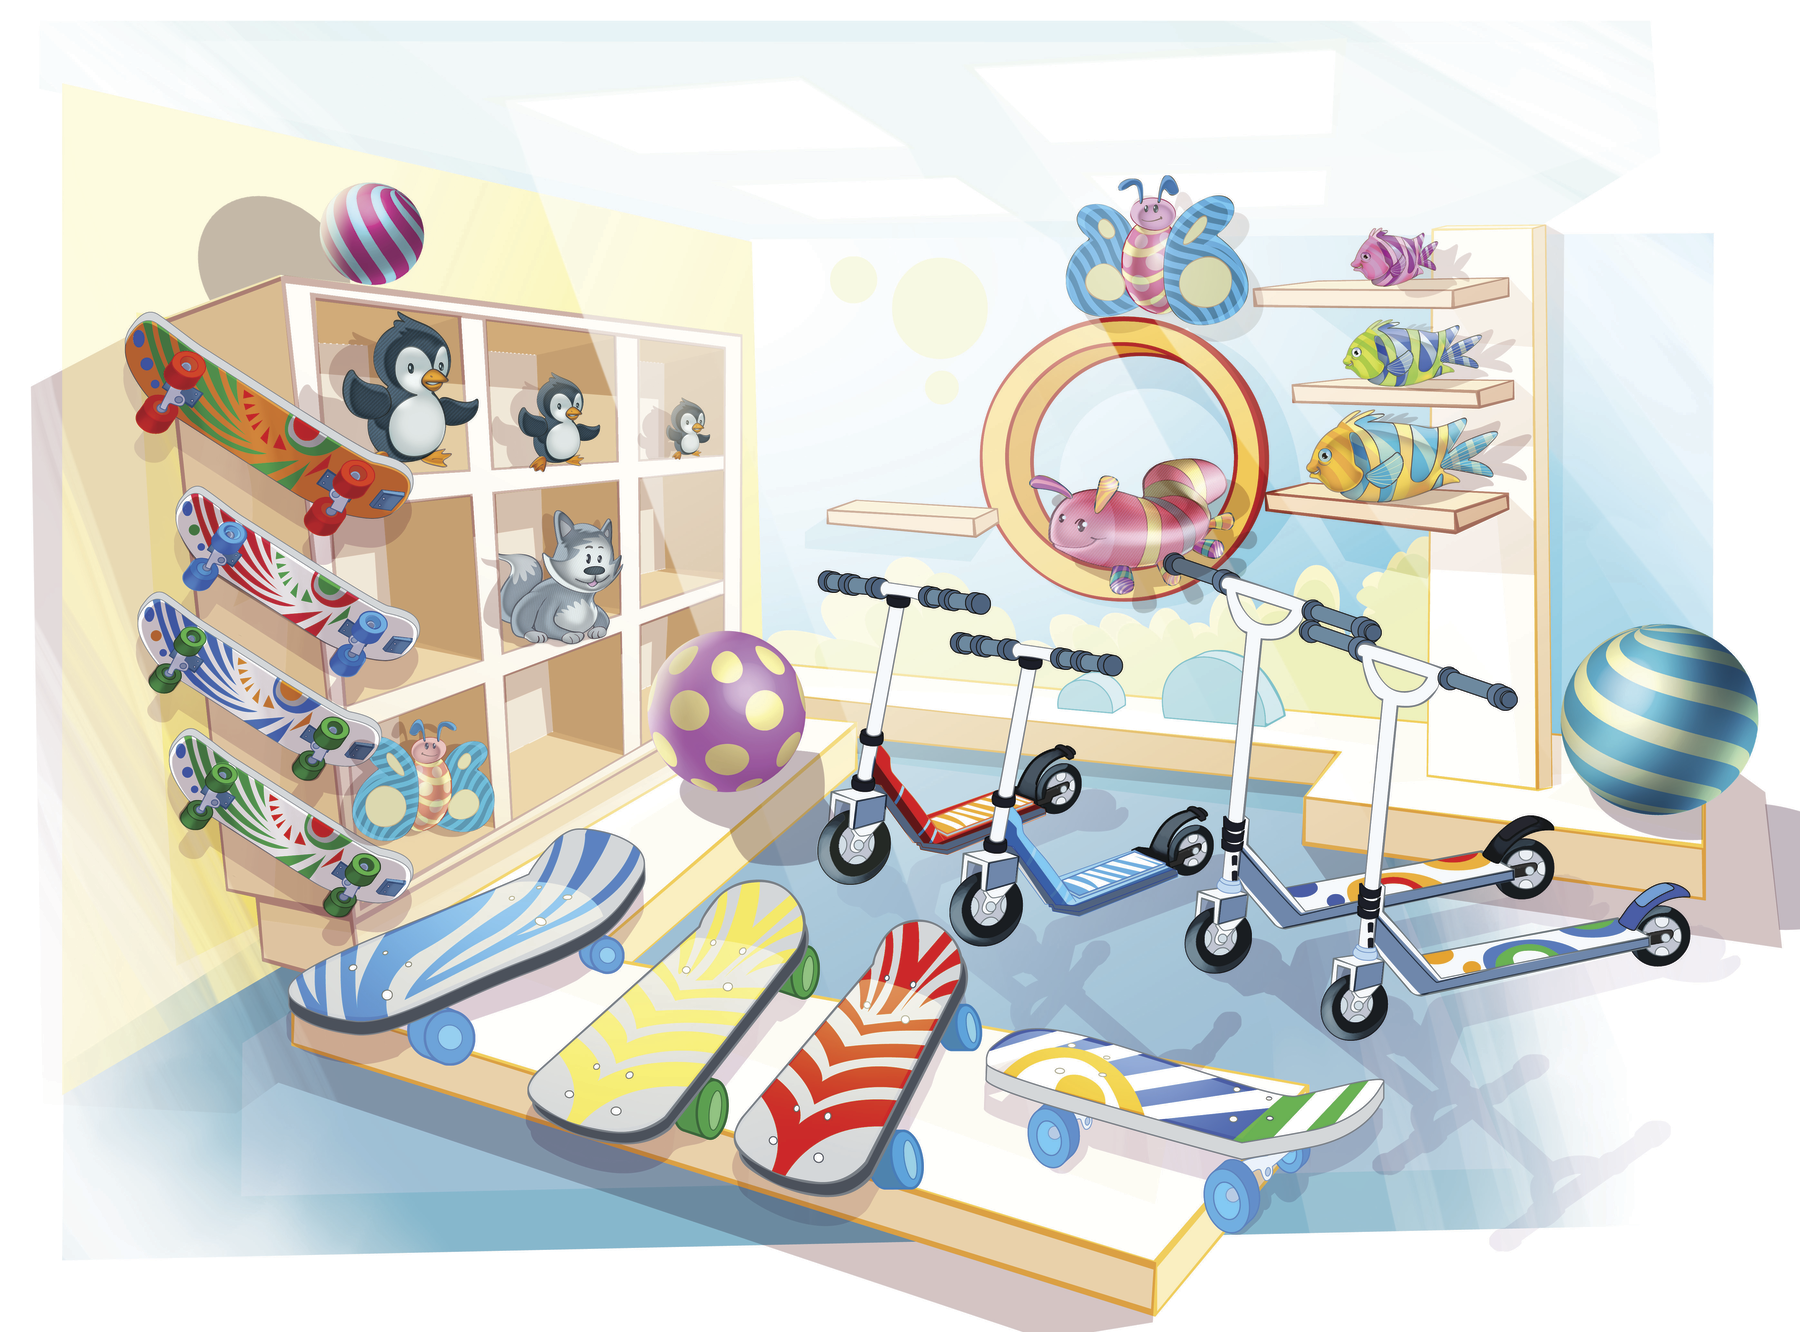 Ilustração. Vista do alto de loja de brinquedos com patinetes, skates e prateleira com brinquedos.